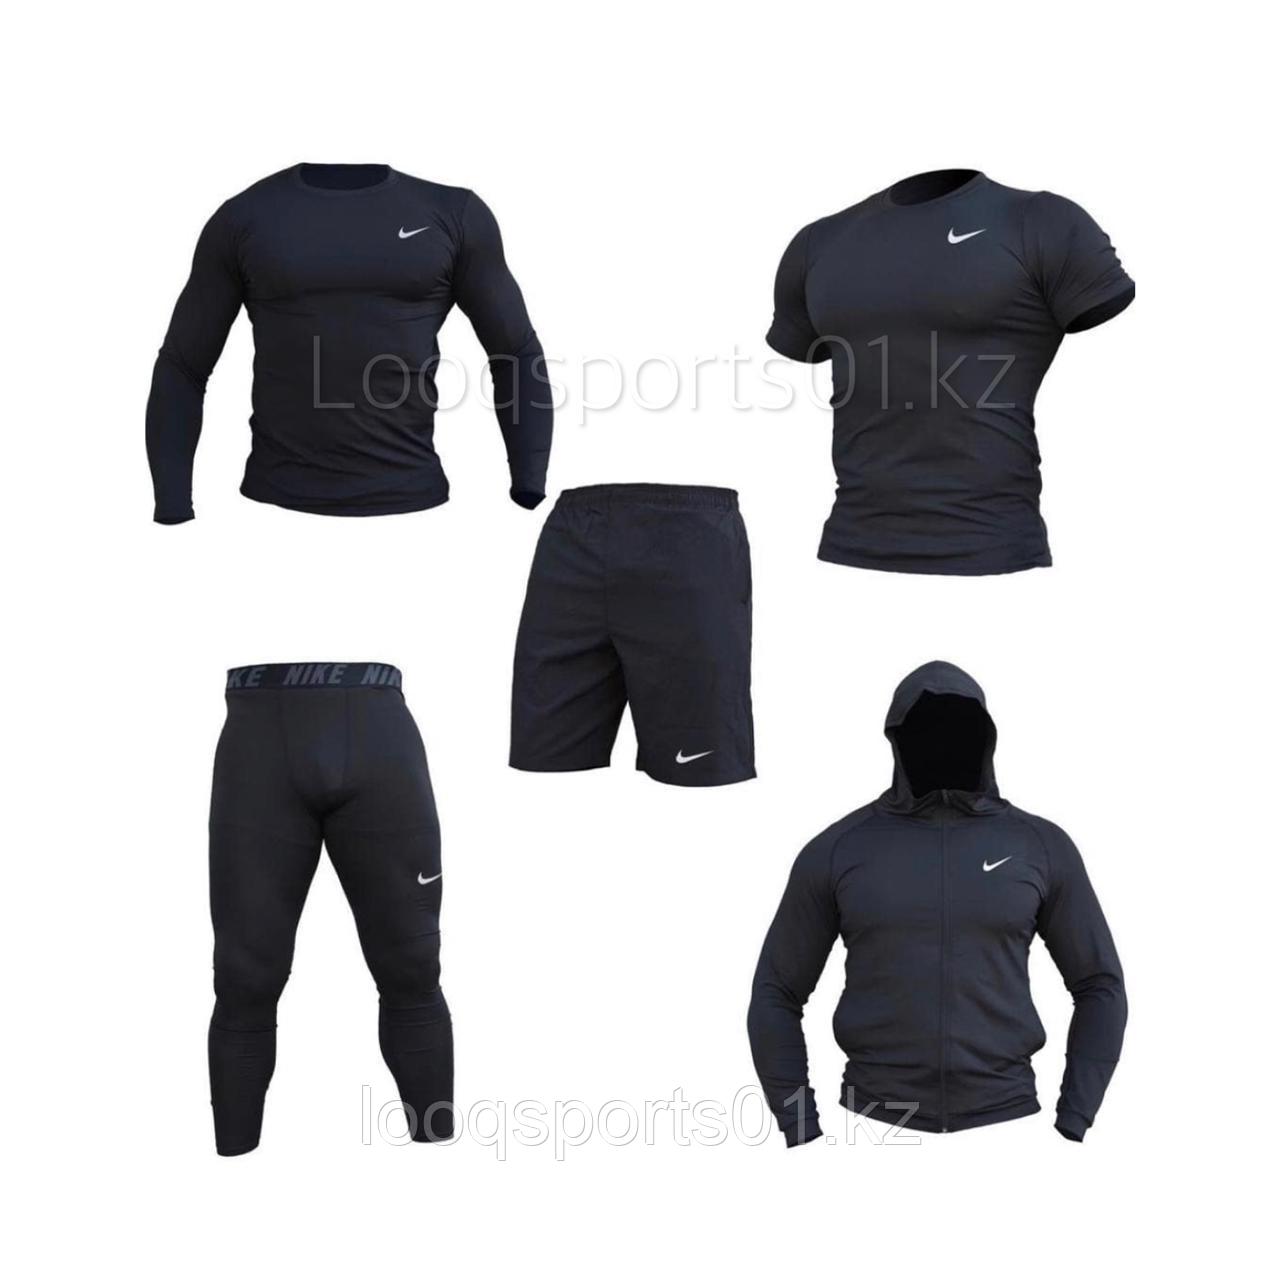 Компрессионный комплект, одеждадля спорта Рашгард 5в1 Nike